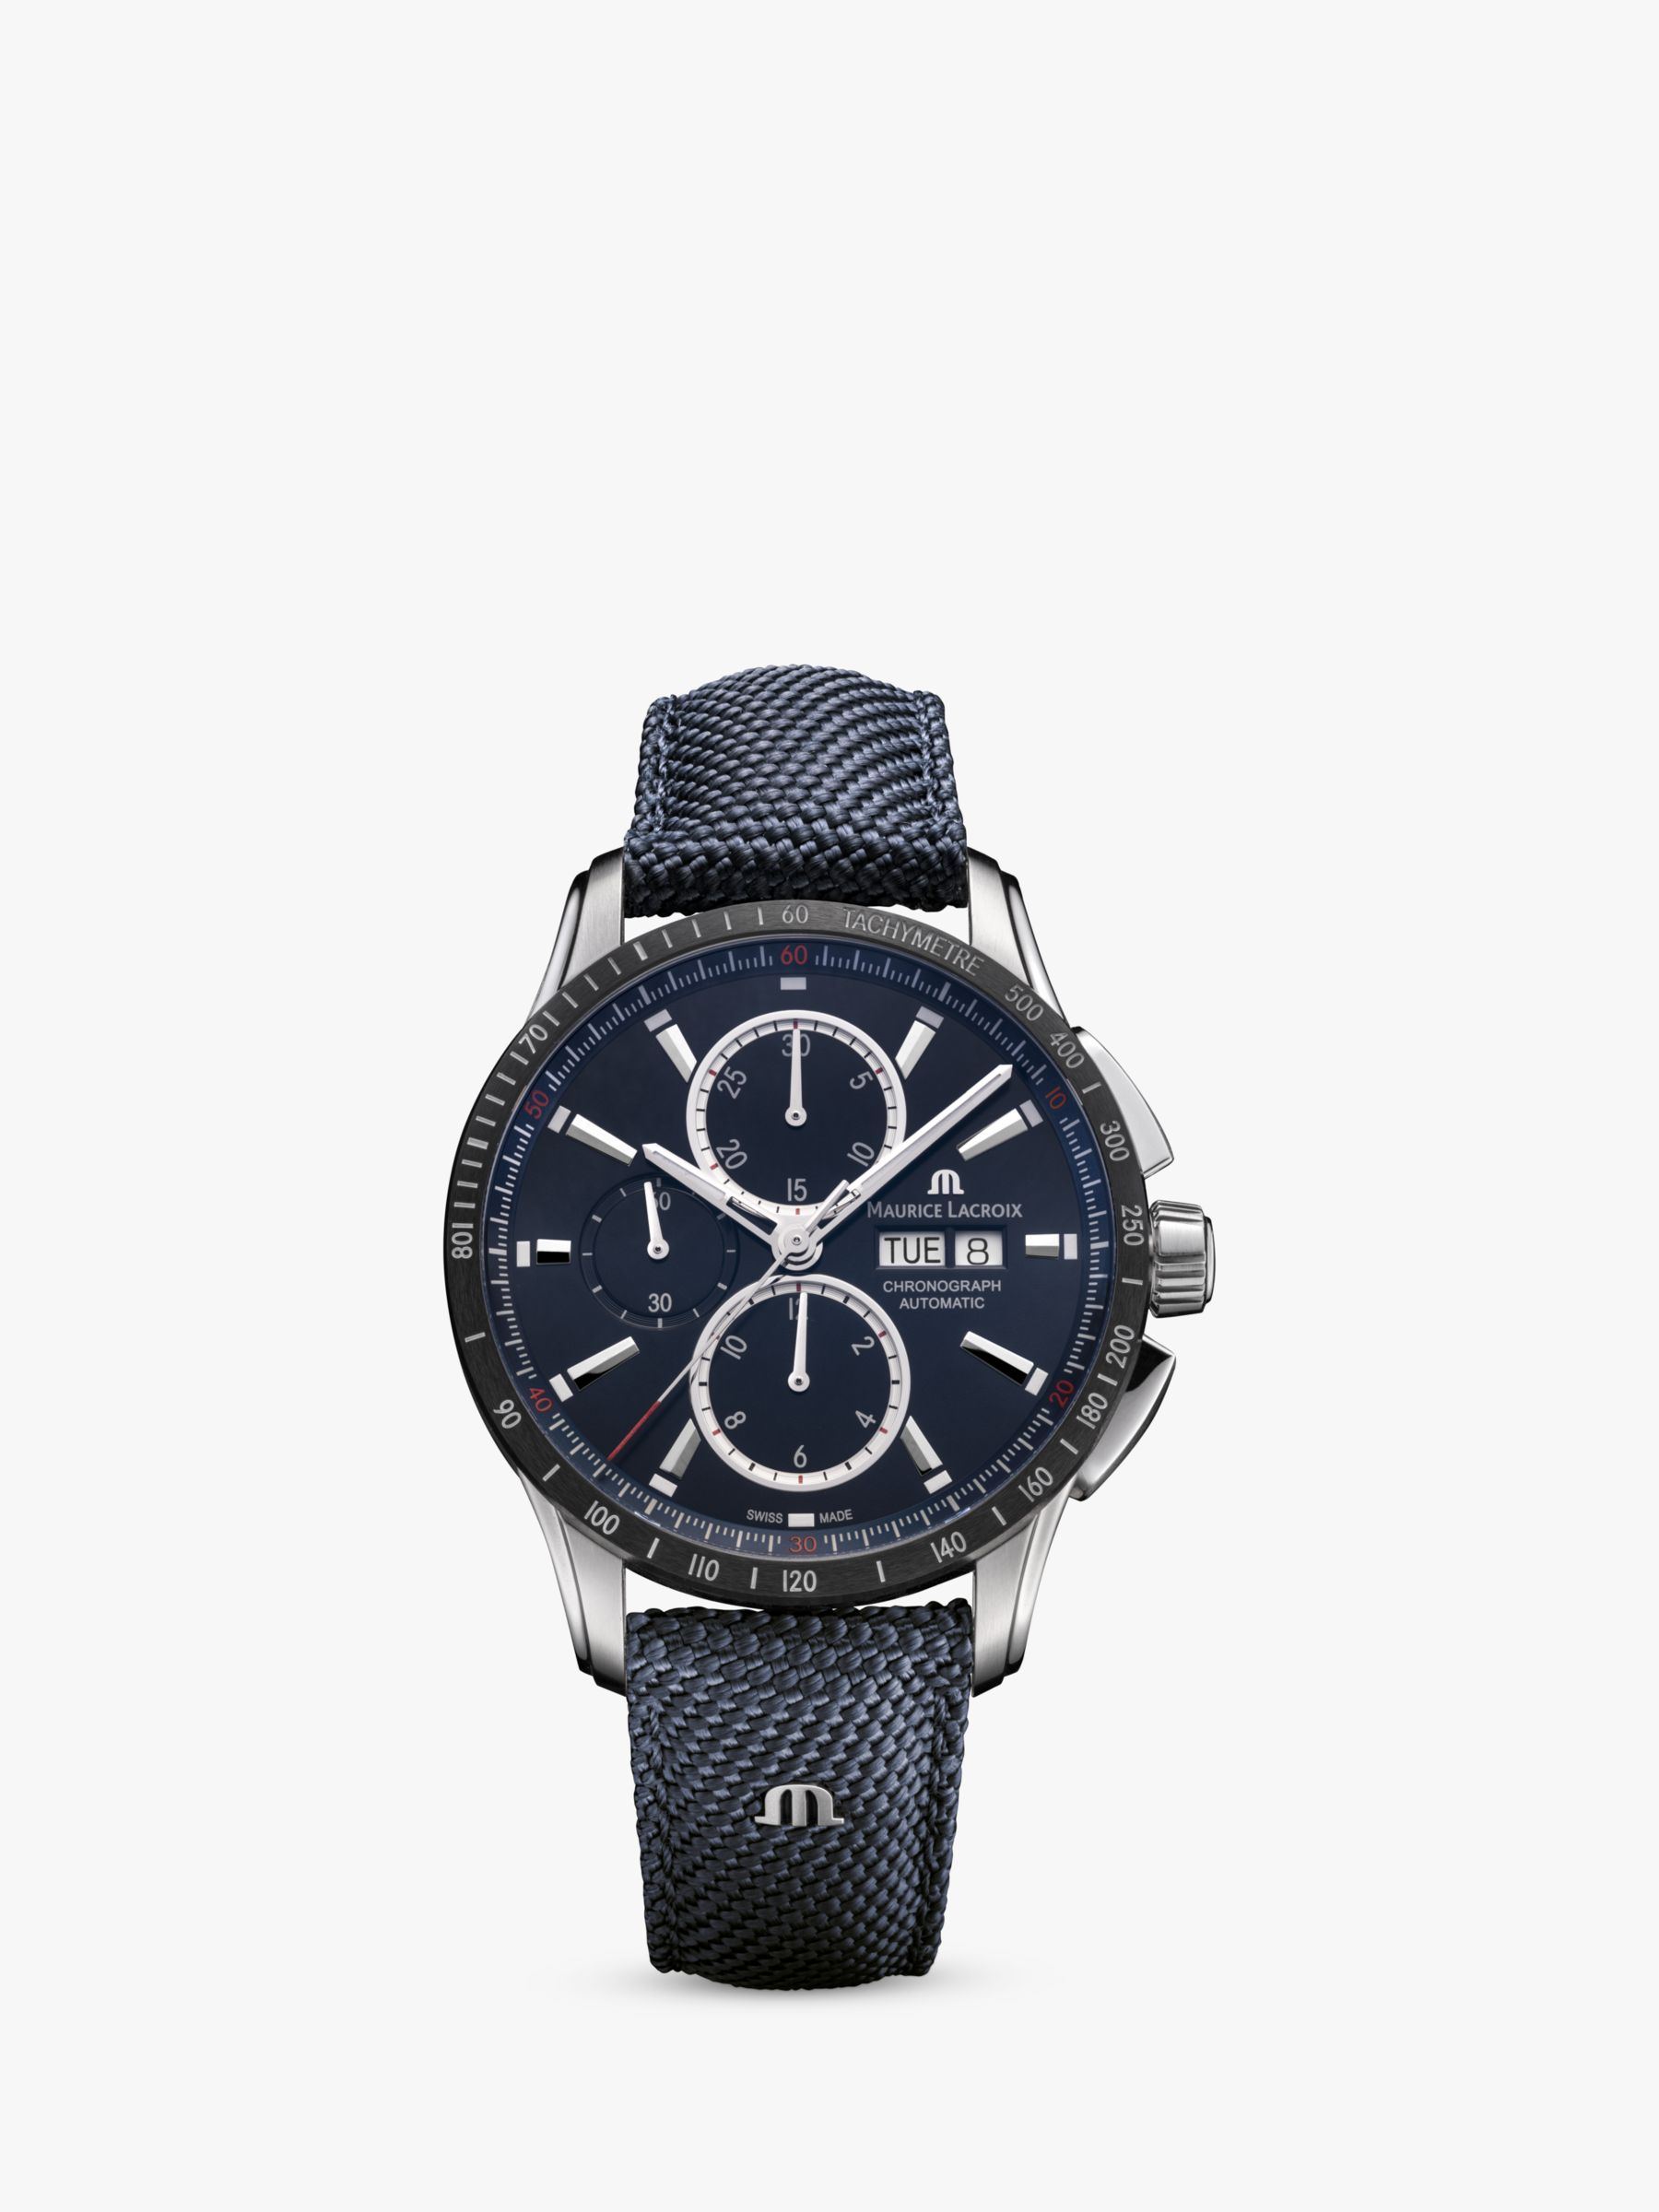 Maurice Lacroix PT6038-SSL24-430-4 Men\'s Pontos at Date Partners Leather Chronograph Watch, Lewis Blue & John Strap Automatic